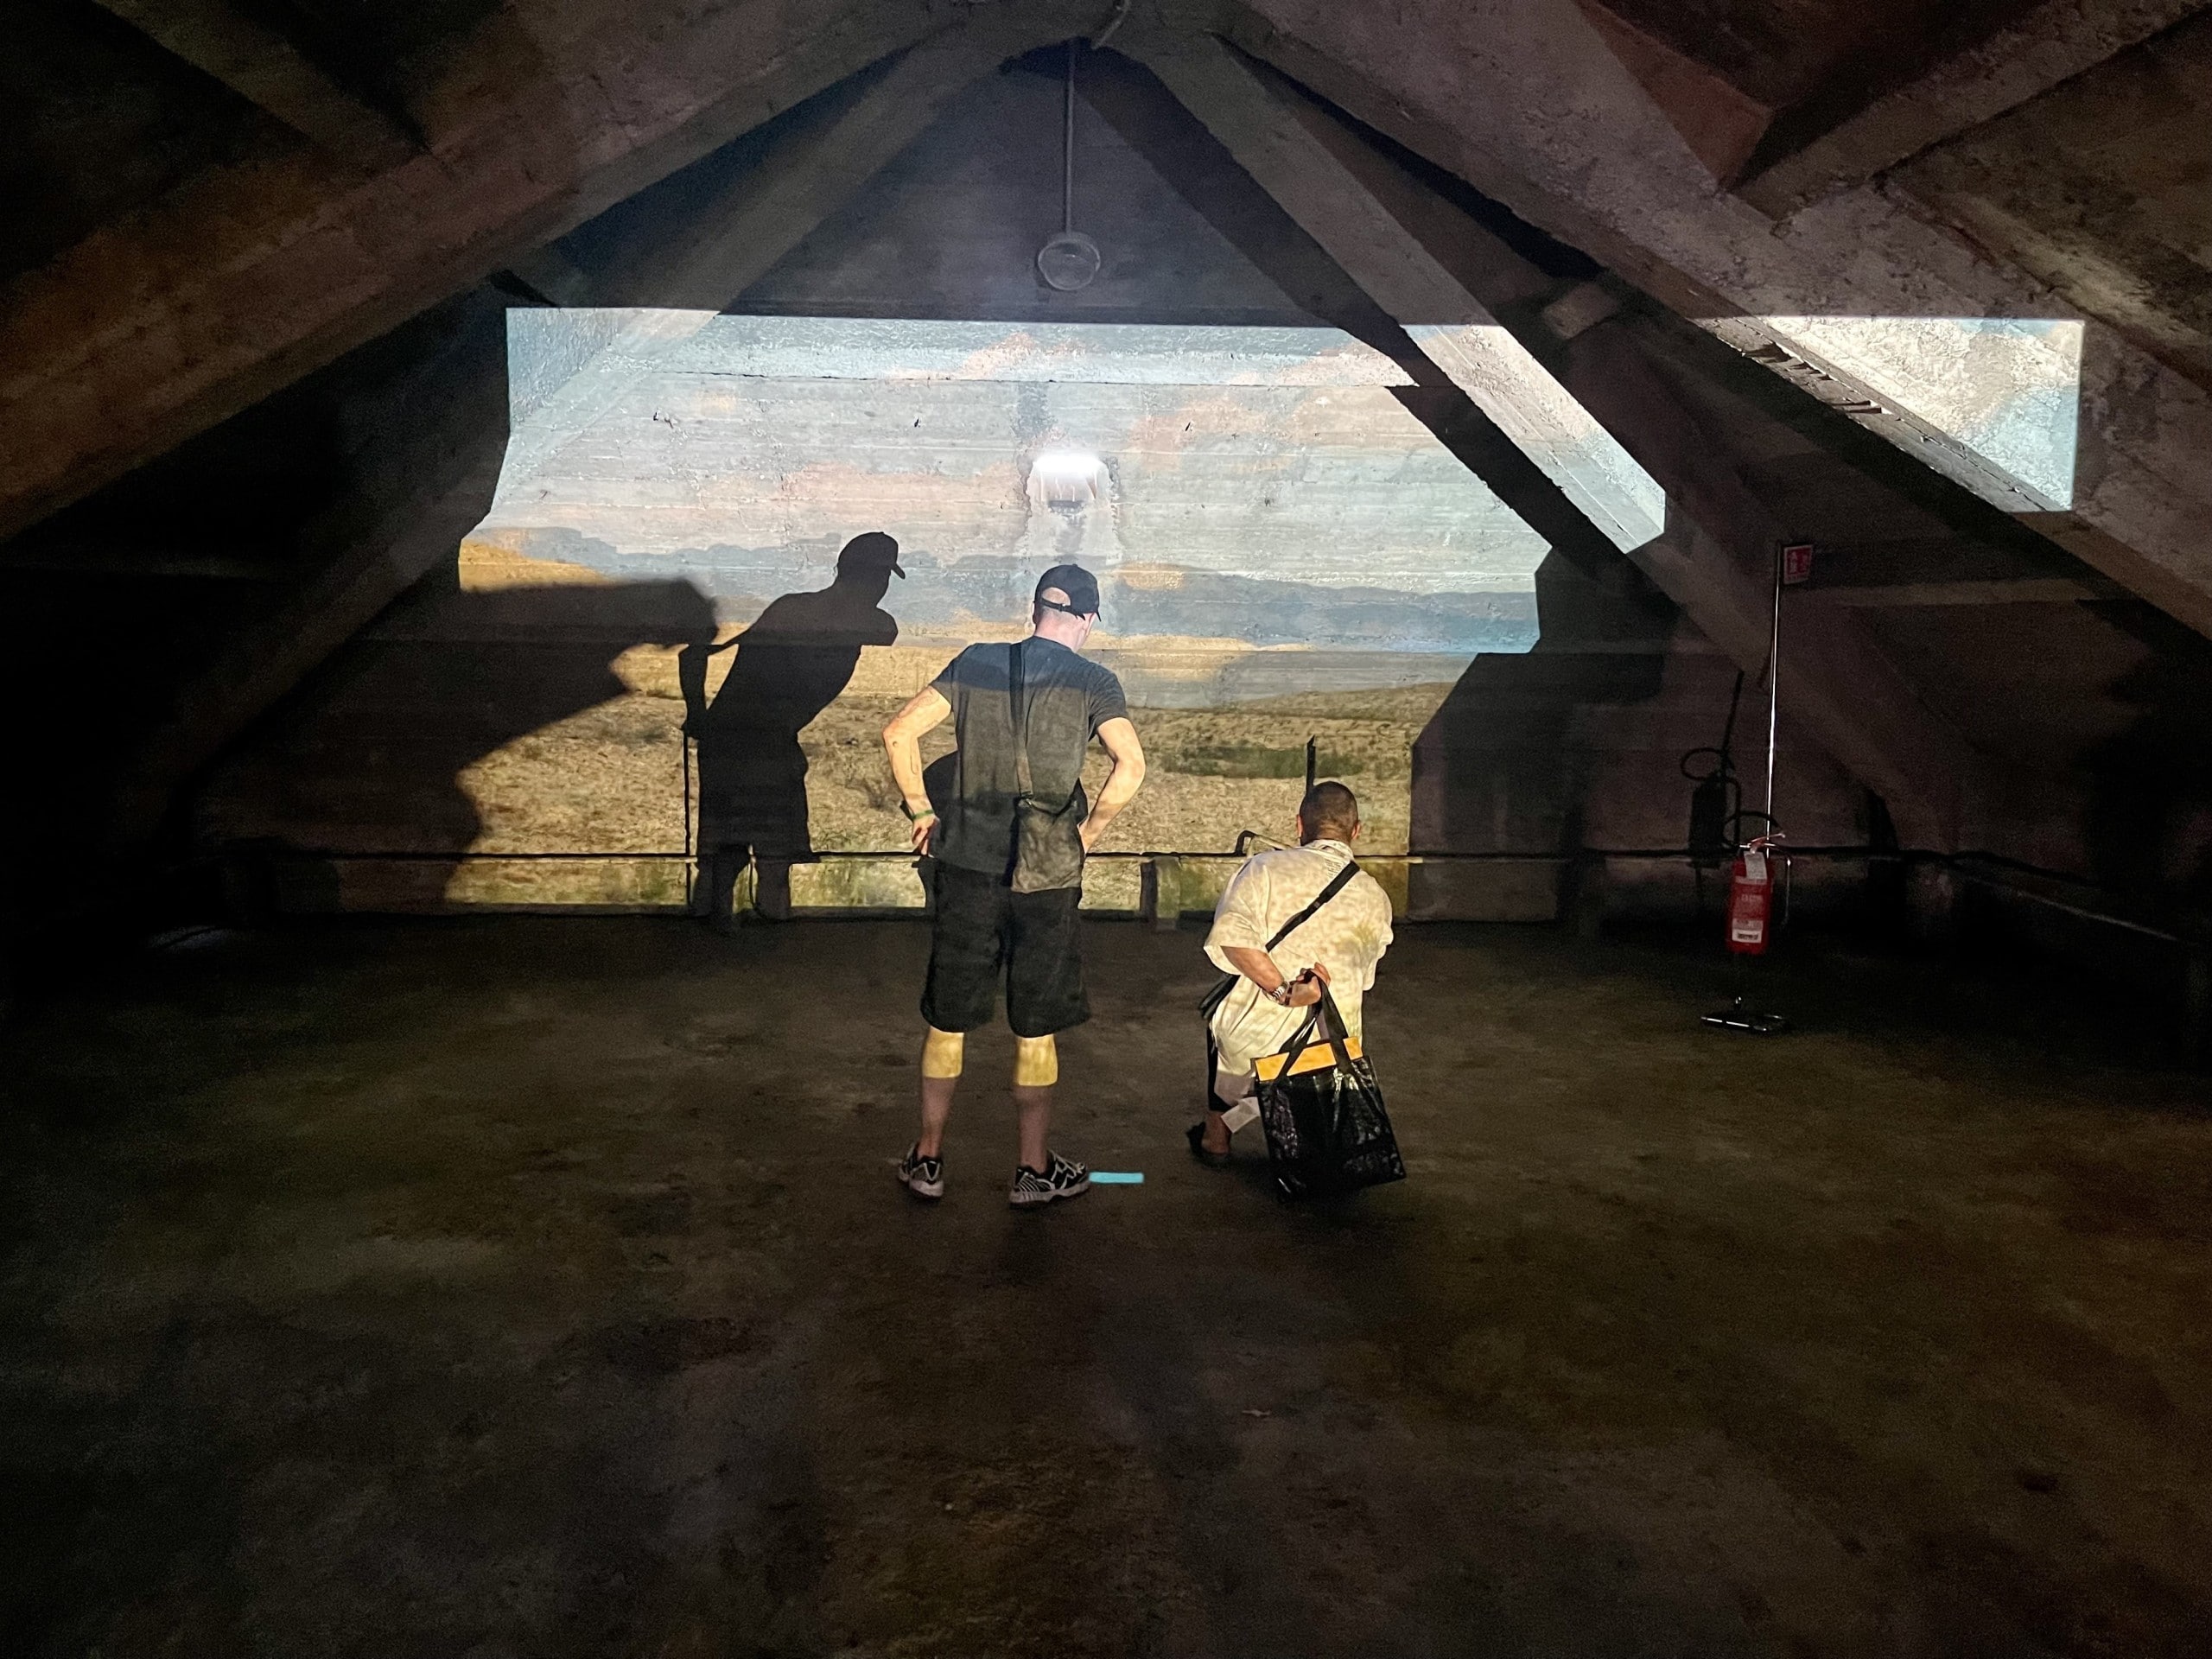 Blick auf eine Projektion in einem alten Dachraum, vor der eine Person steht und eine Person kniet. Alcova 2022, Foto: Baumeister/Fabian Peters